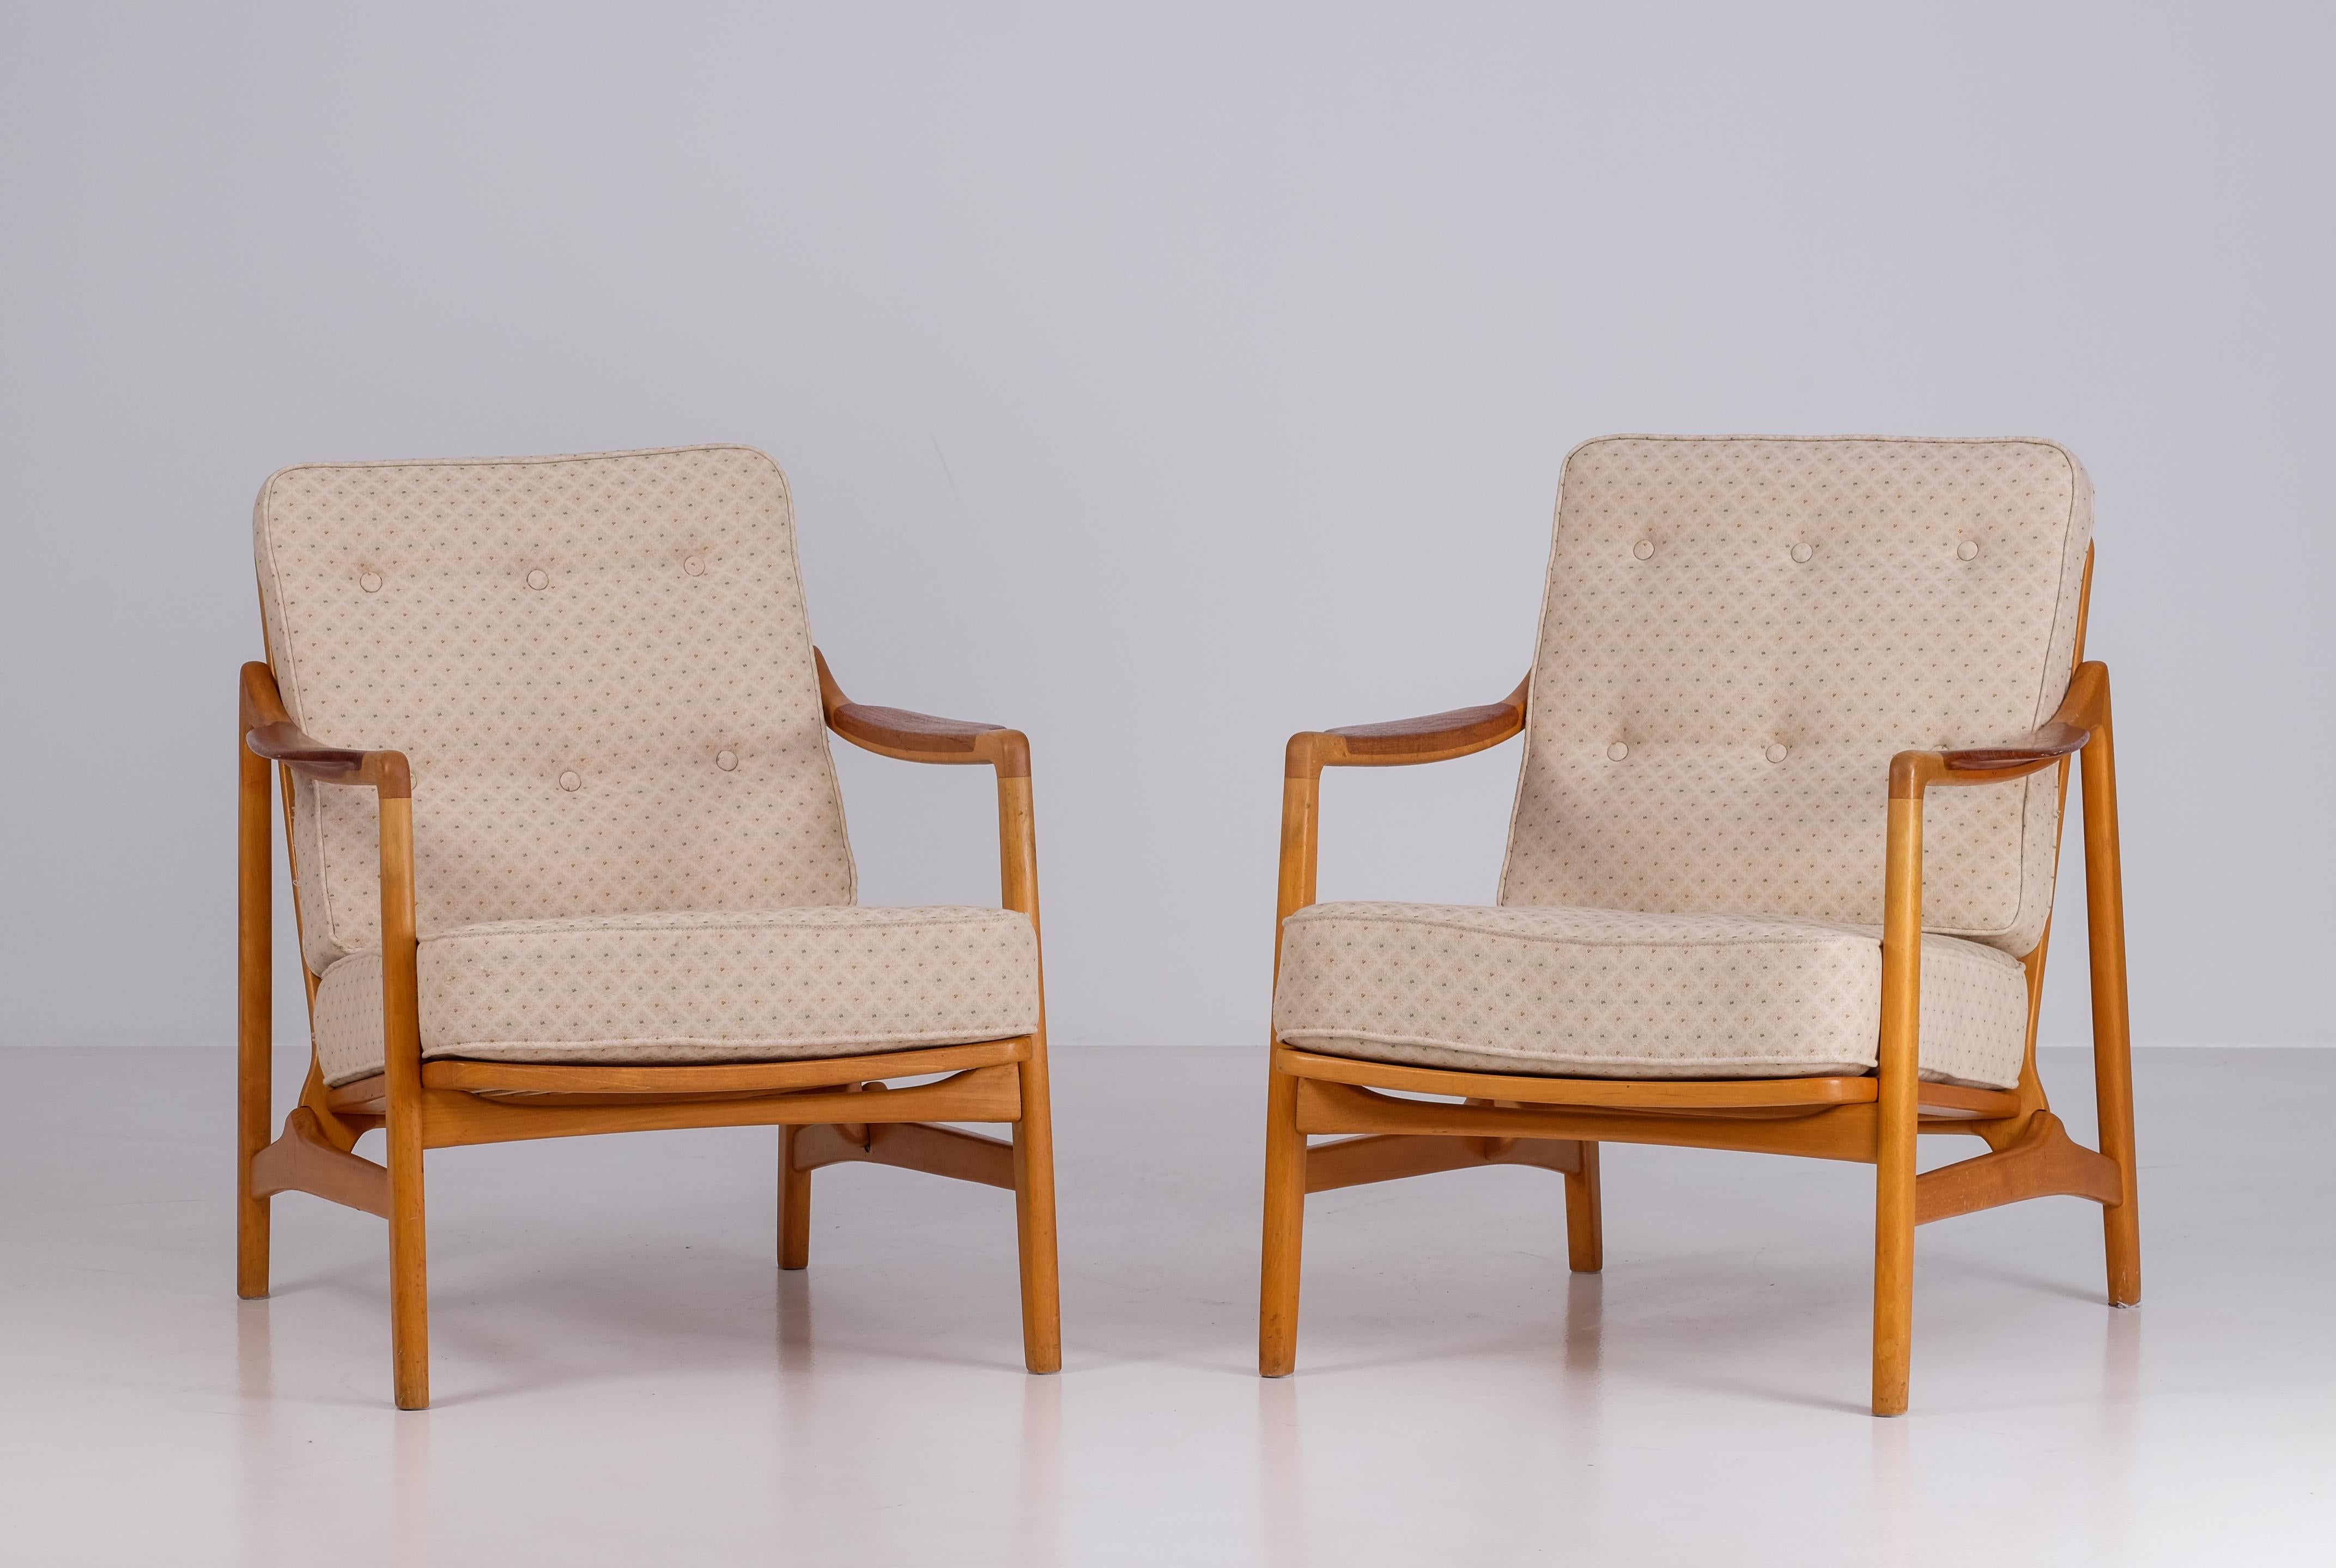 Tove and Edvard Kindt-Larsen for France & Daverkosen, pair of chairs, 'FD 116', oak, teak, fabric, Denmark, design 1954, produced 1960s.